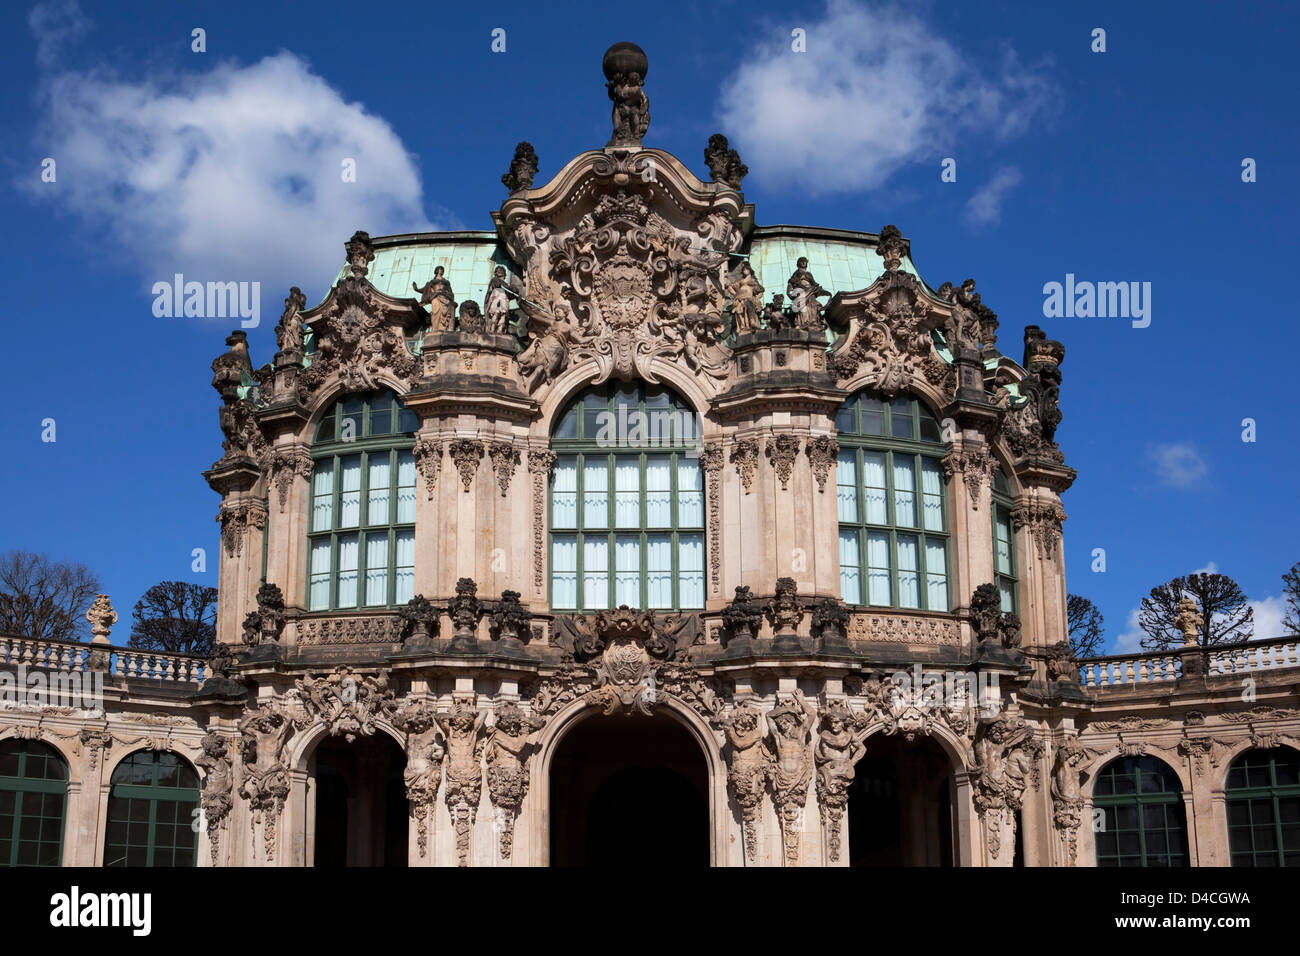 Wallpavillon, Zwinger, Dresden, Saxony, Germany, Europe Stock Photo